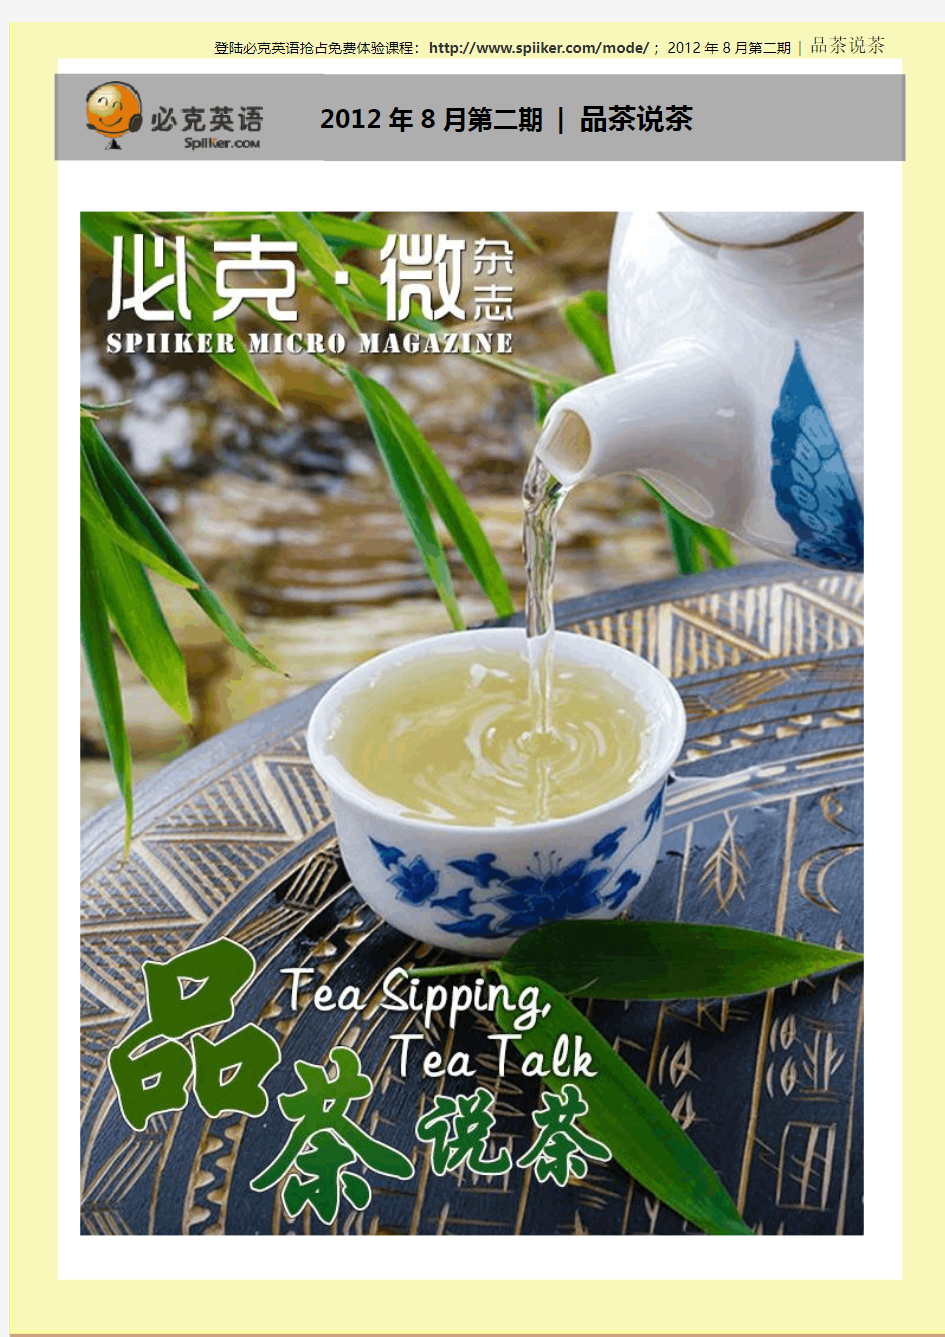 必克英语 微杂志 2012年8月第二期 品茶说茶